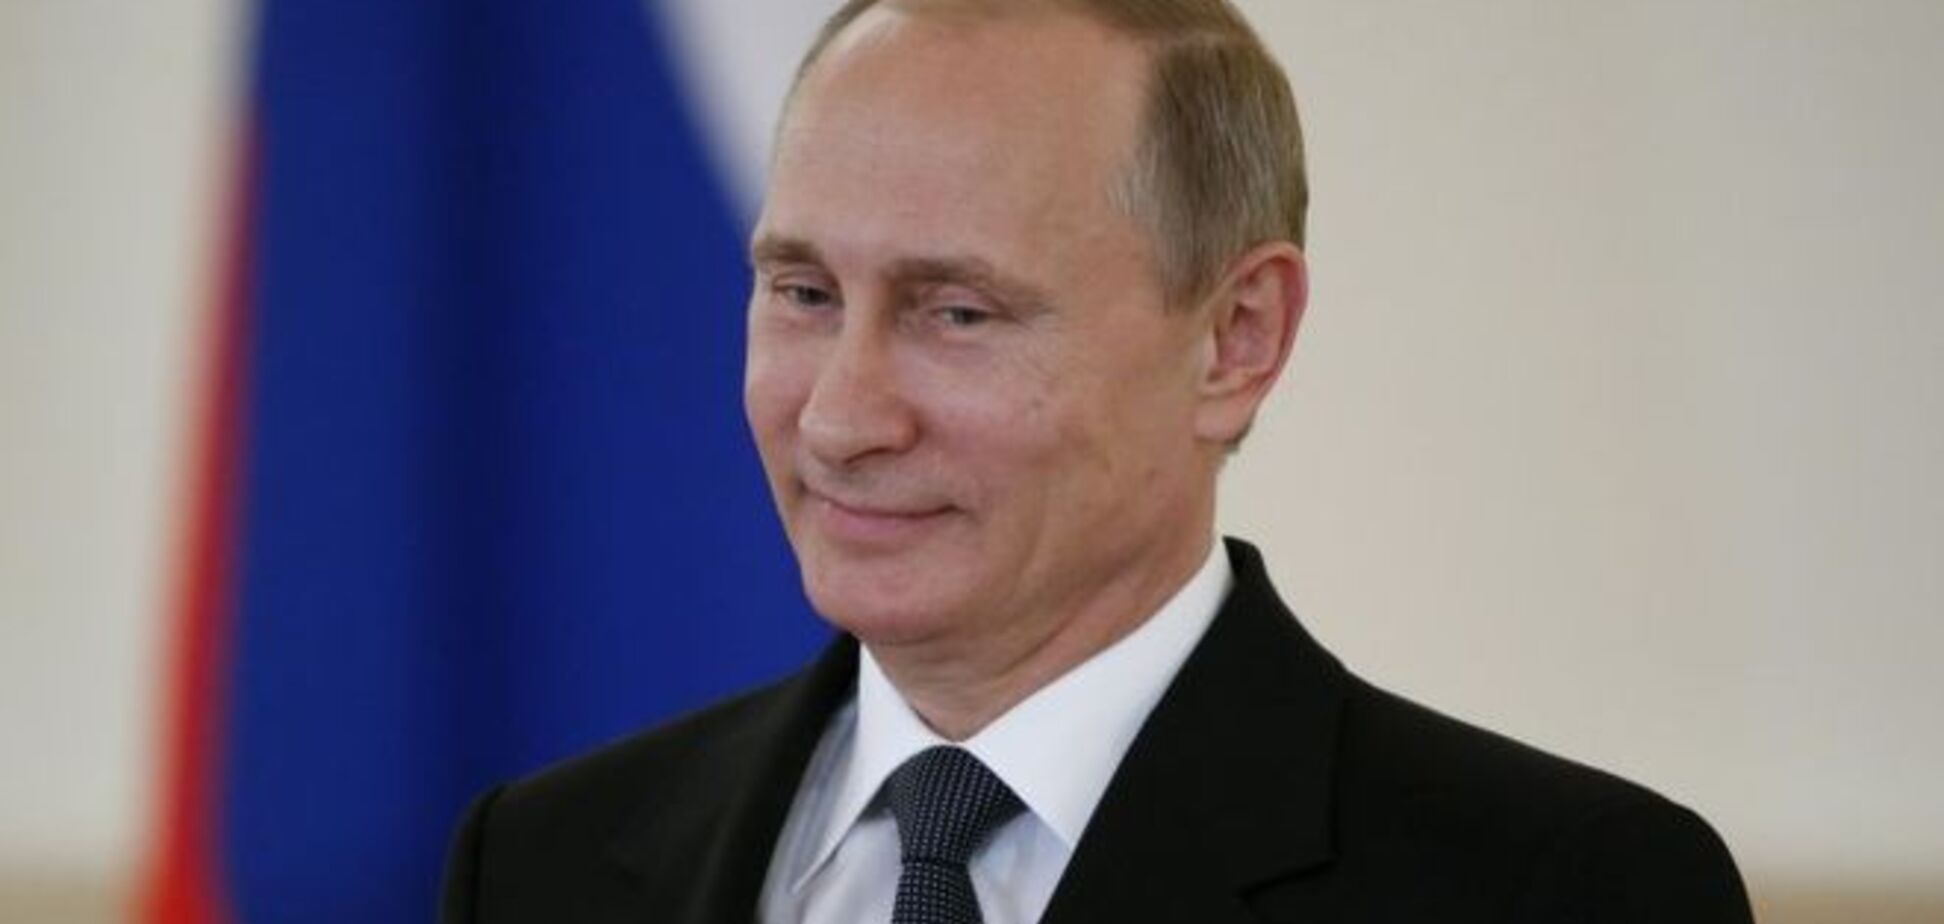 Хорошая мина при плохой игре: в Милане Путин посетовал на санкции